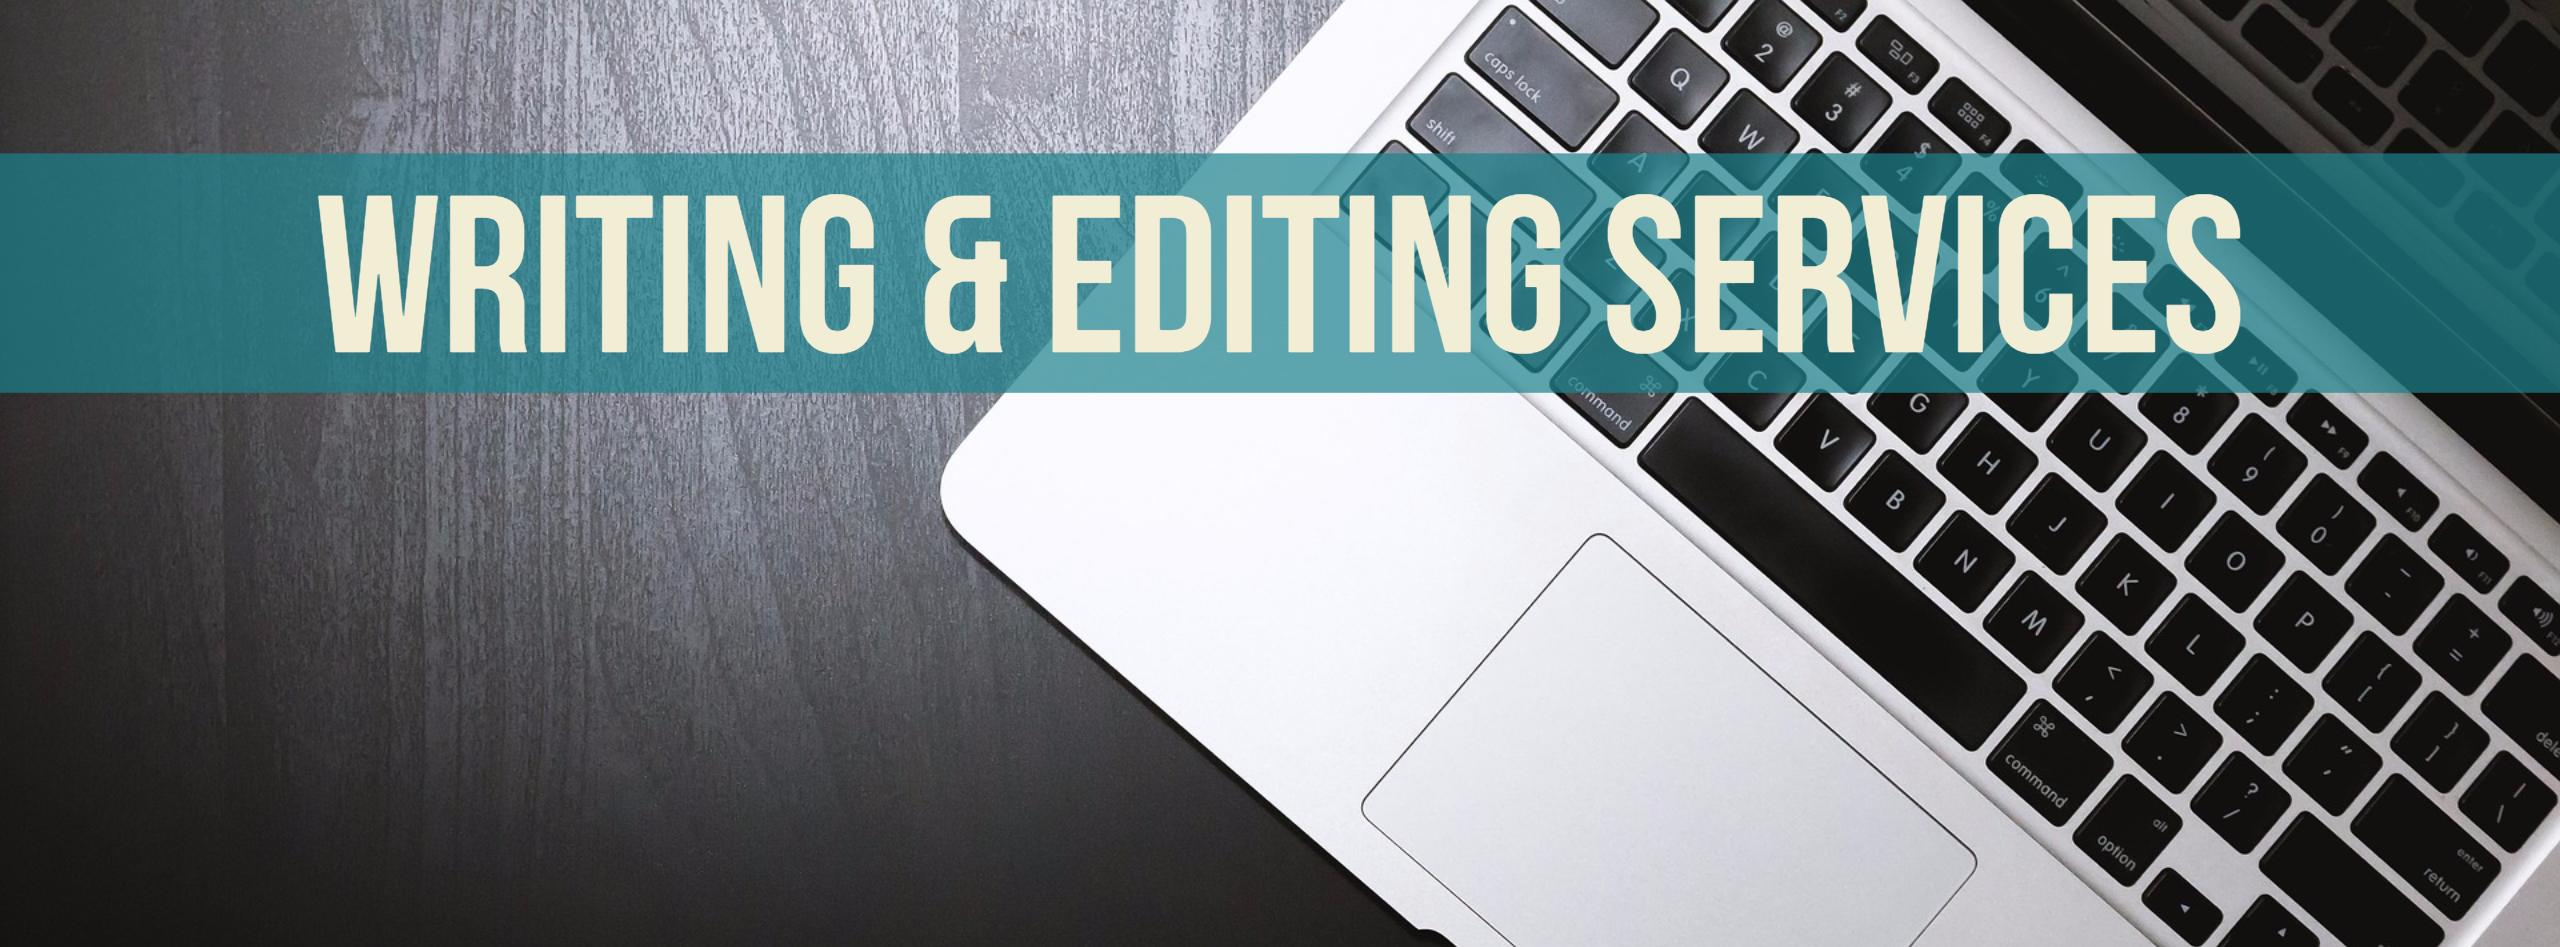 Editing writing services com